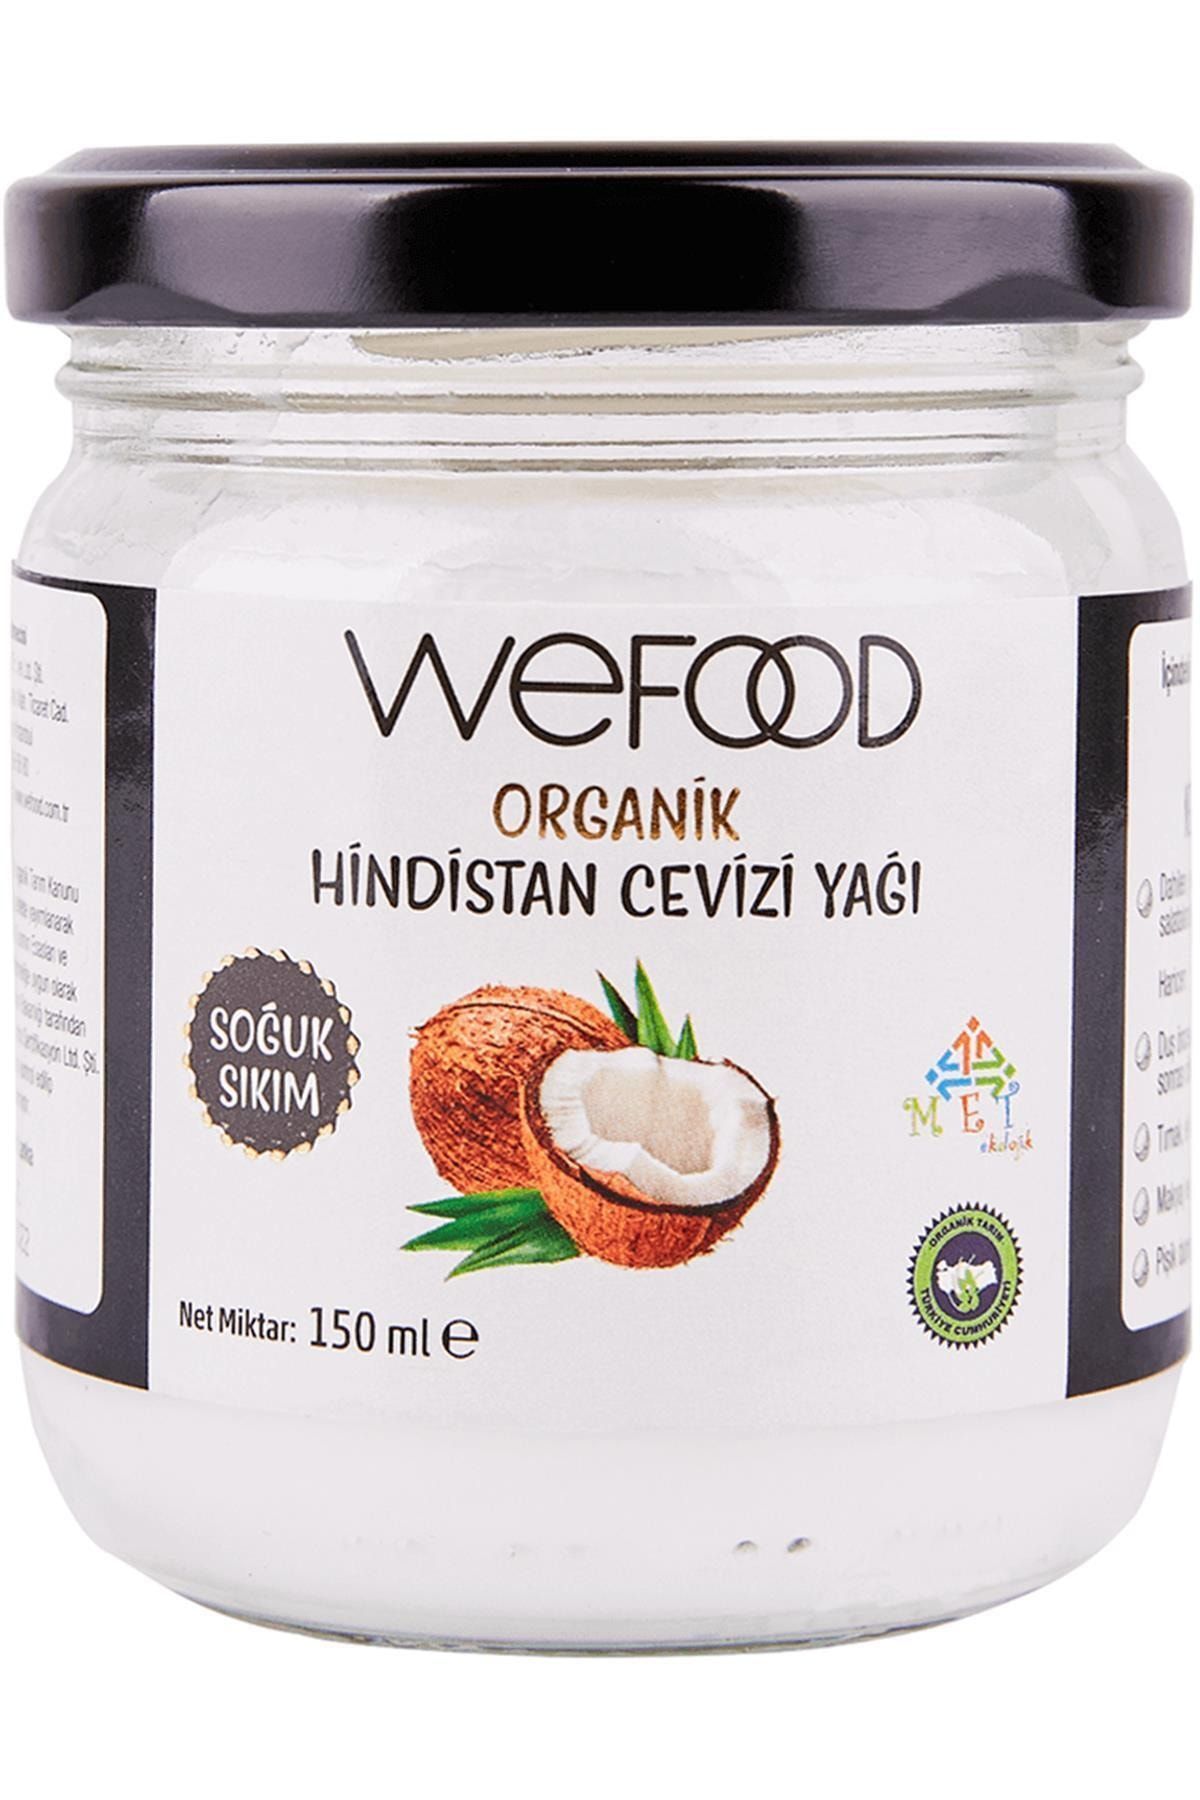 Wefood Organik Hindistan Cevizi Yağı 150ml